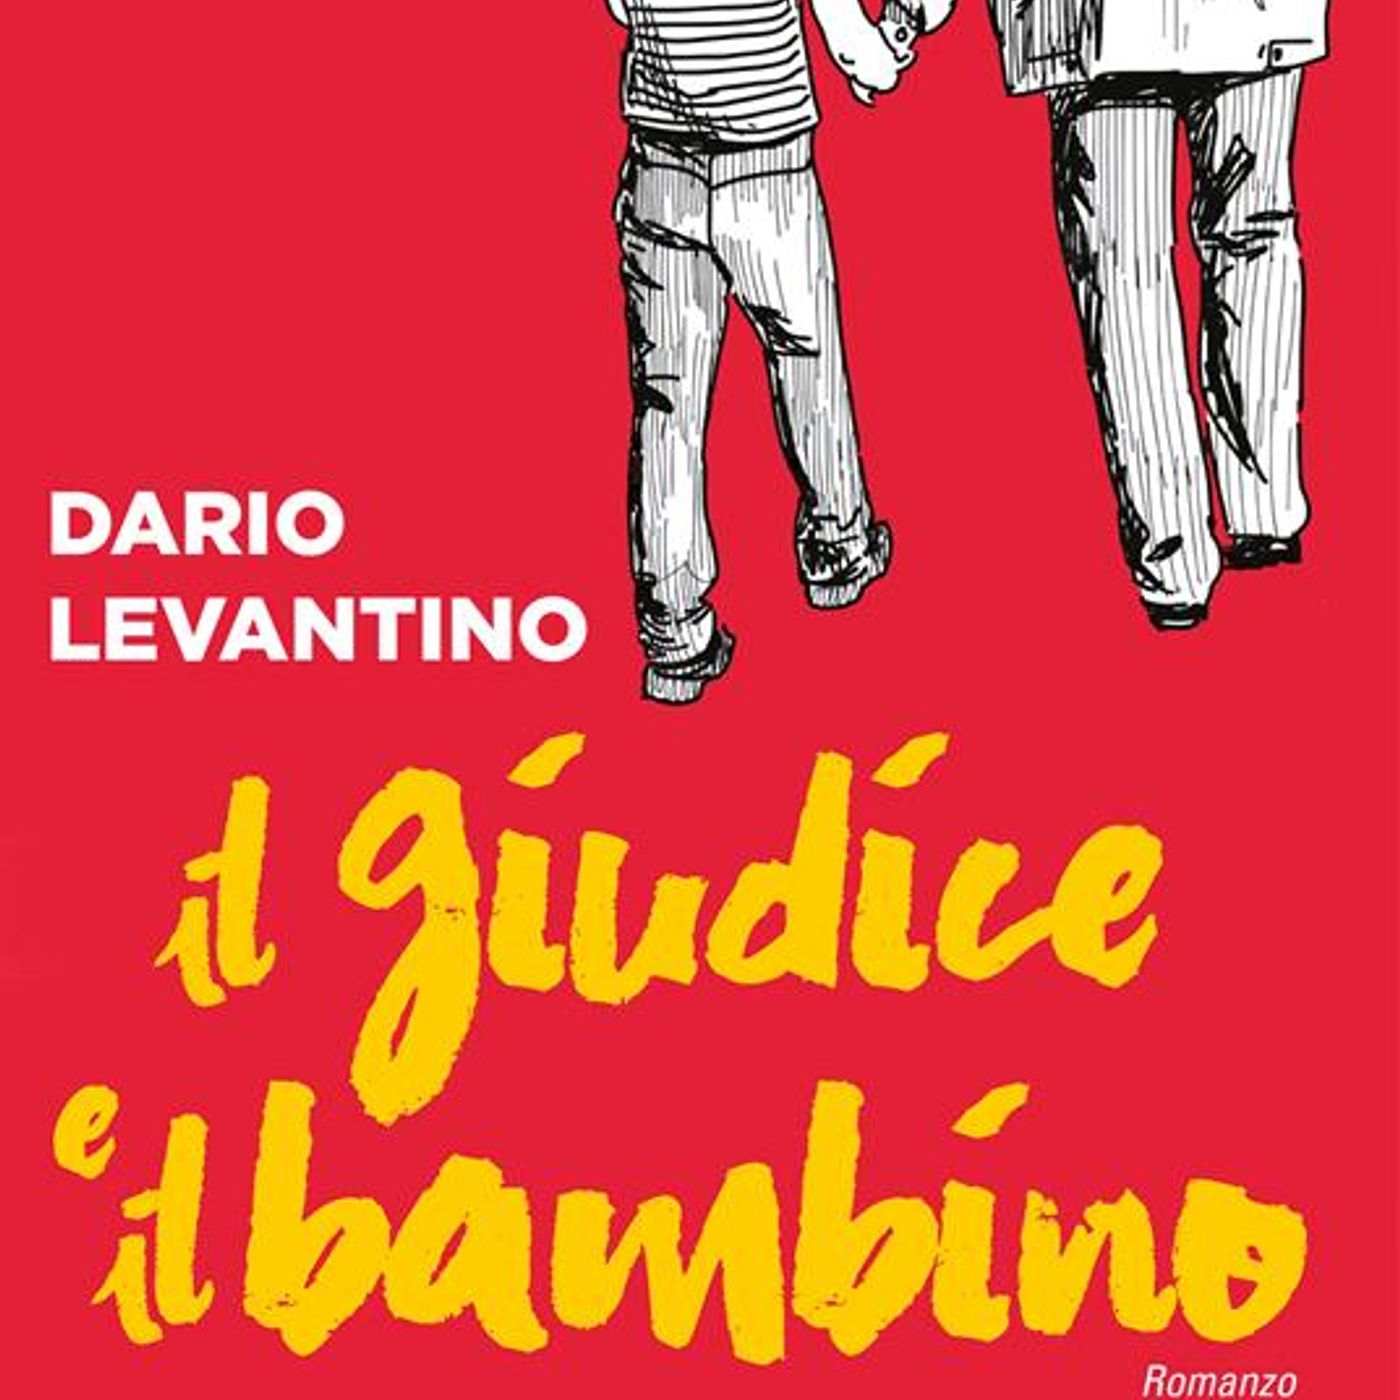 Dario Levantino "Il giudice e il bambino"